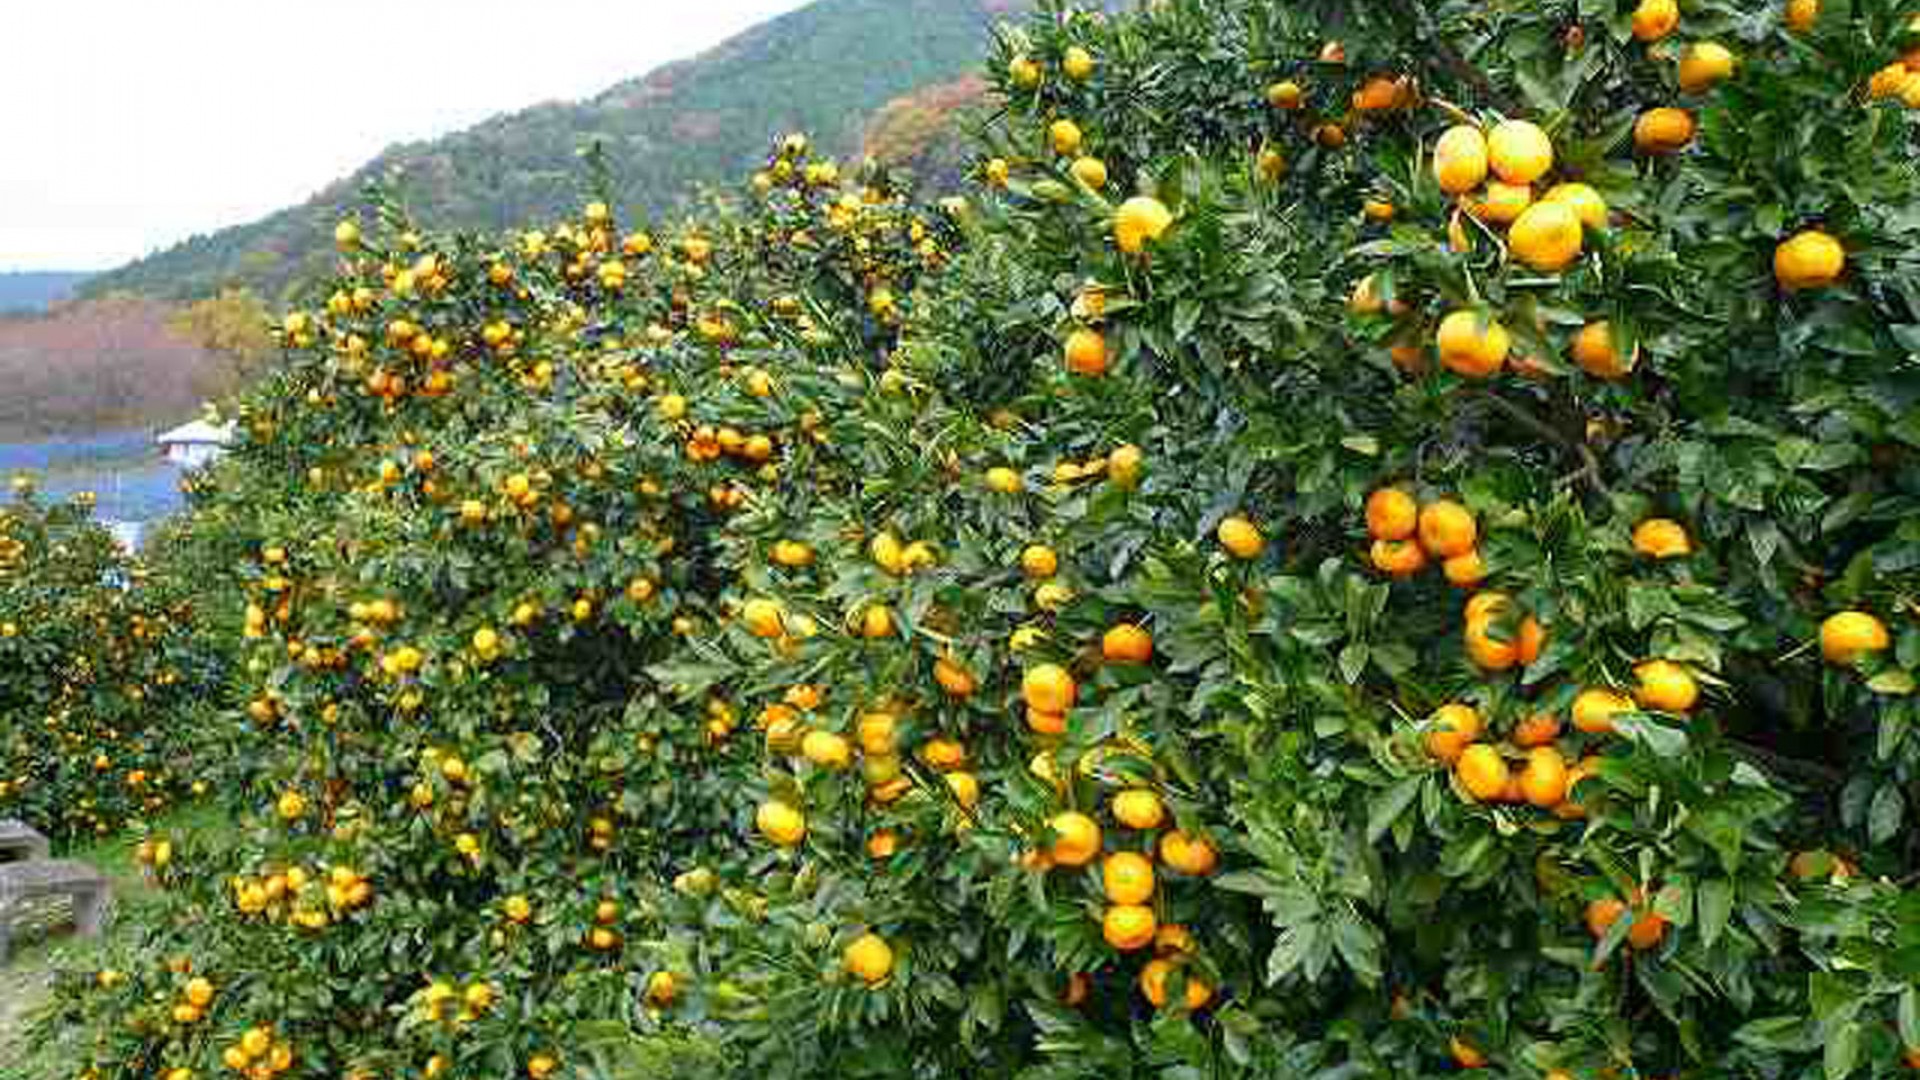 การเก็บส้มแมนดาริน: สวนไนโตะ และสวนอะงิ